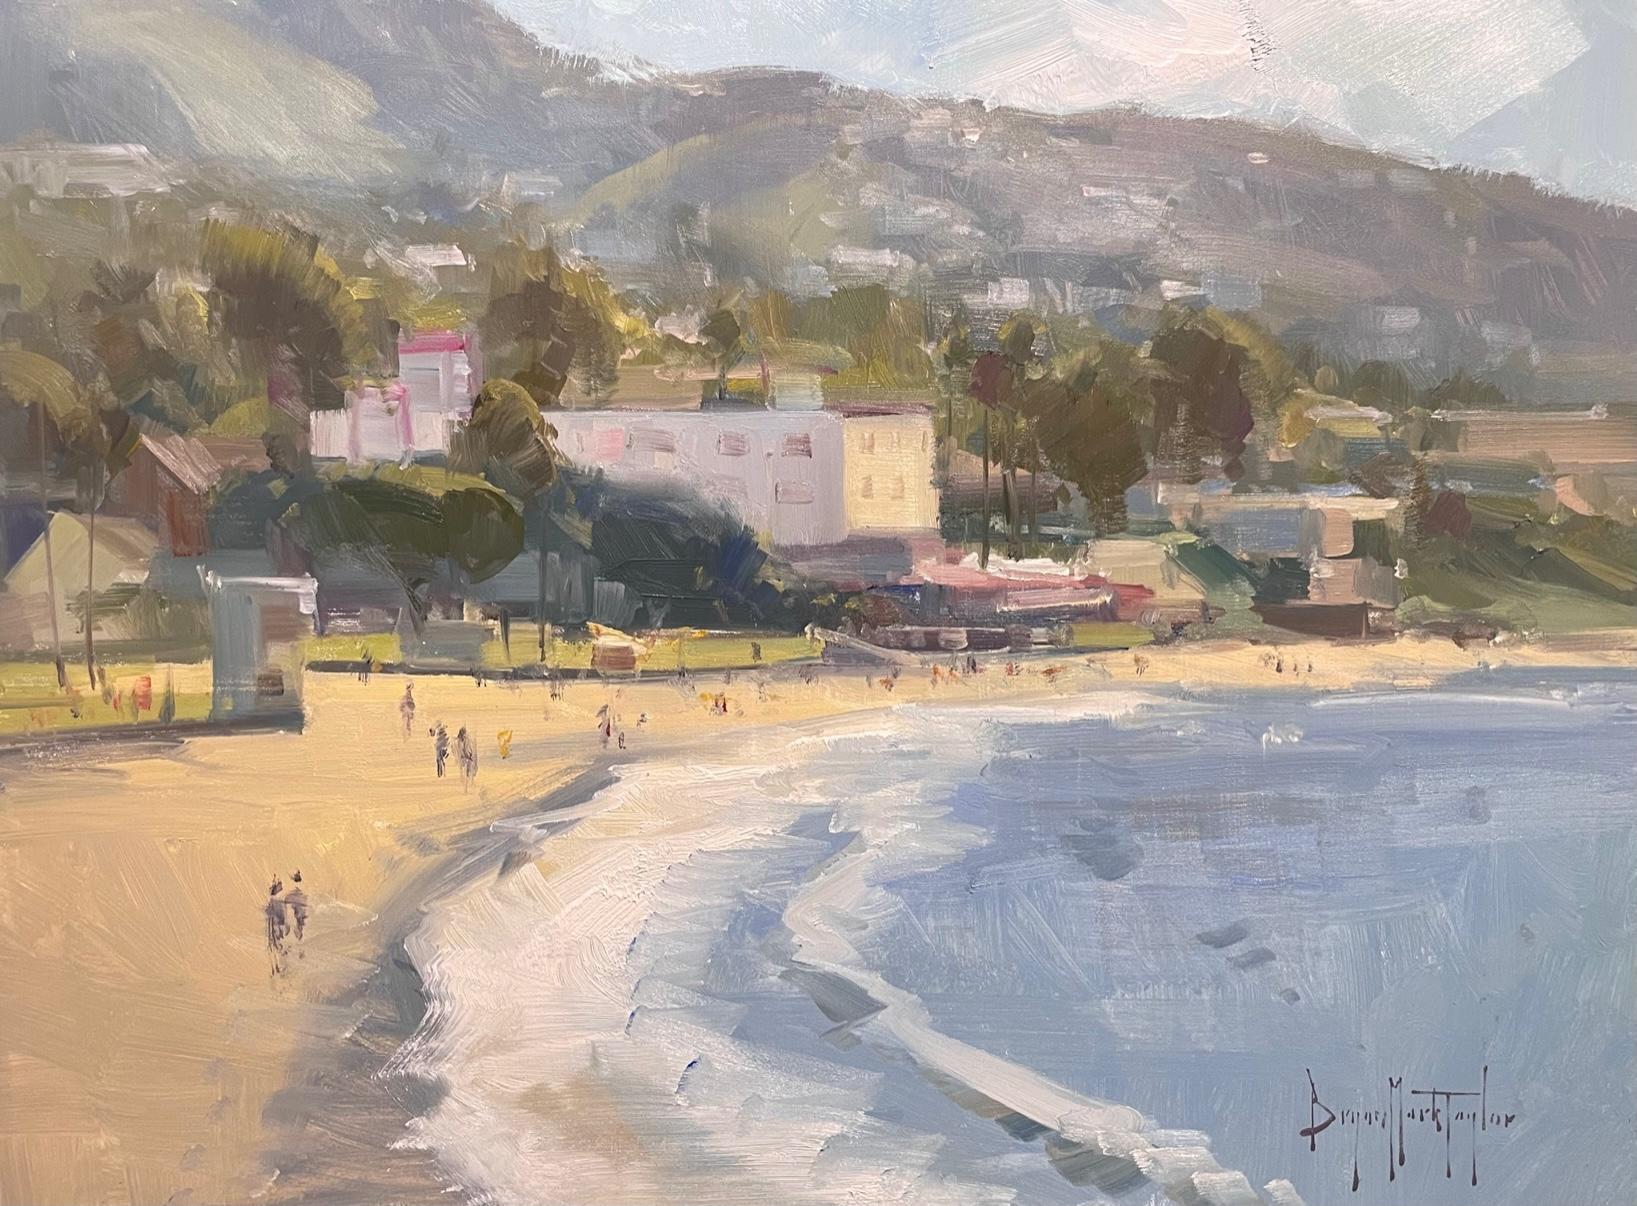 Landscape Painting Bryan Mark Taylor - Paysage marin californien impressionniste moderne « Morning At Main Beach » (Morning At Main Beach) 